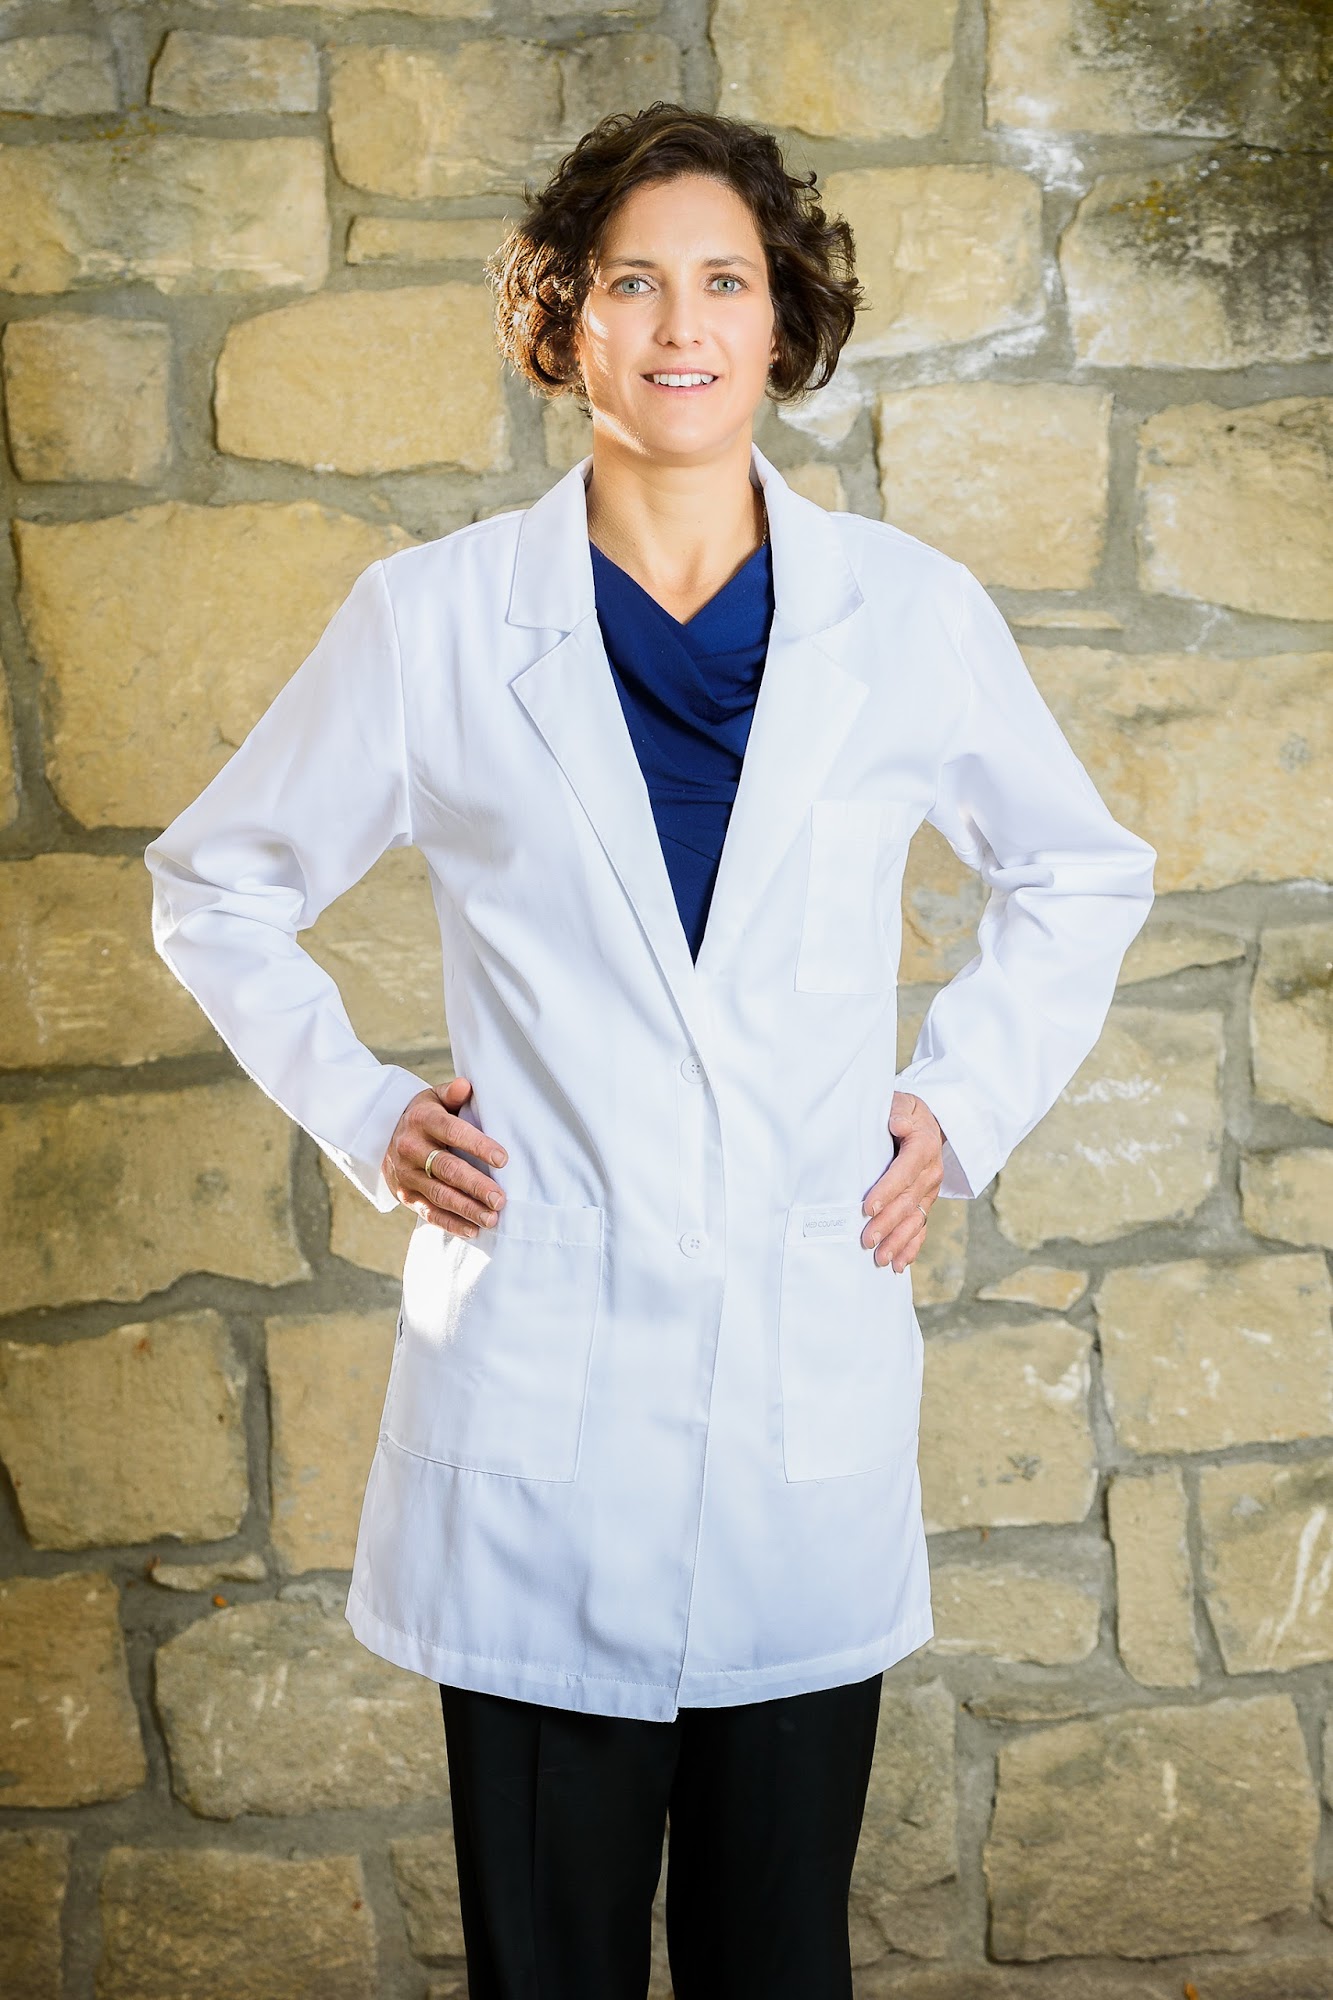 Boise Dermatology and Medspa- Dr. Naomi Brooks